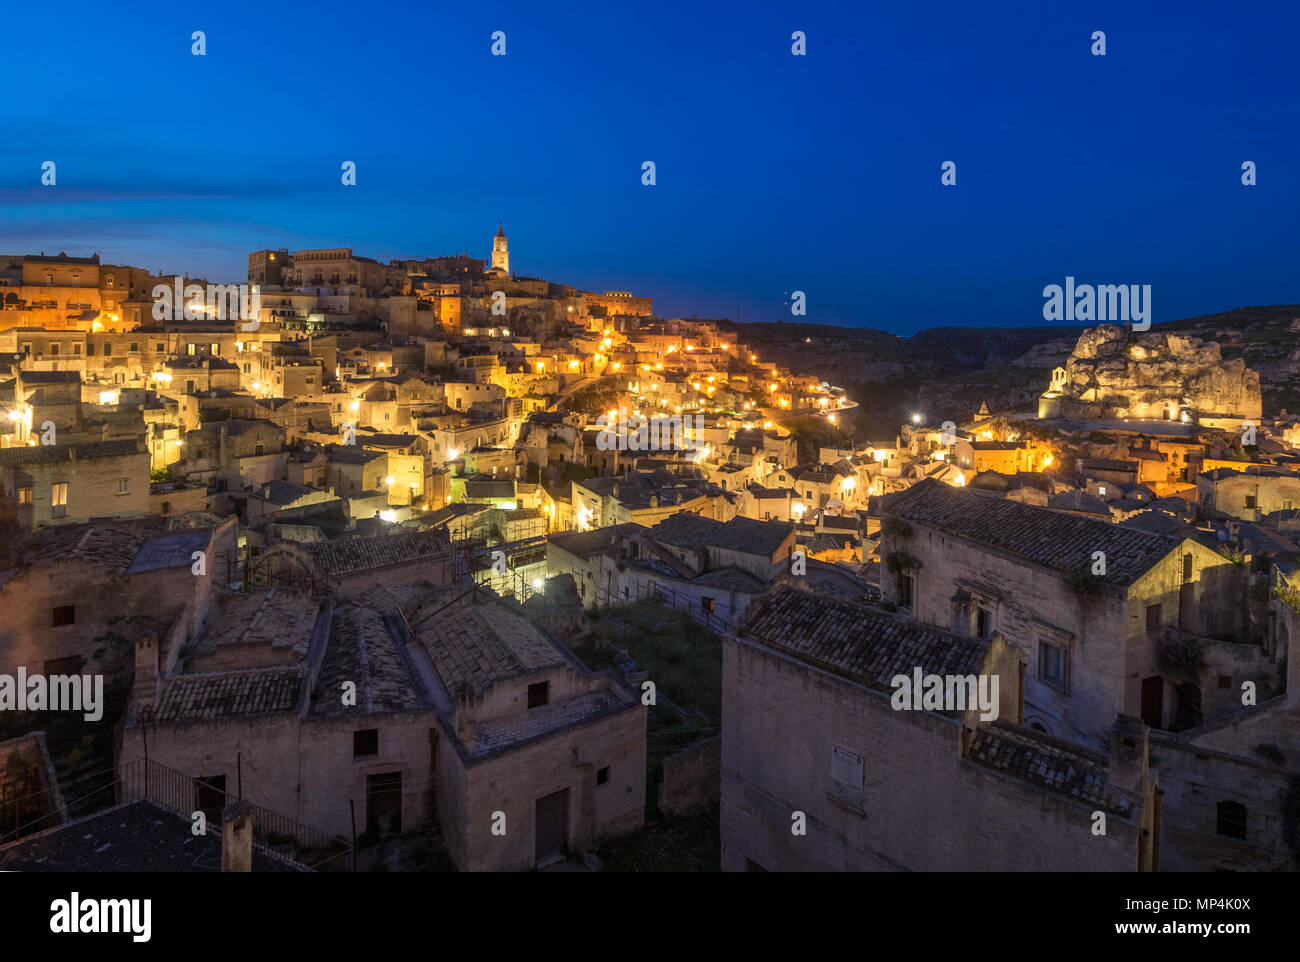 Matera (Basilicata) - Il centro storico della meravigliosa città di pietra del sud Italia, una attrazione turistica per il famoso 'assi' old town. Foto Stock